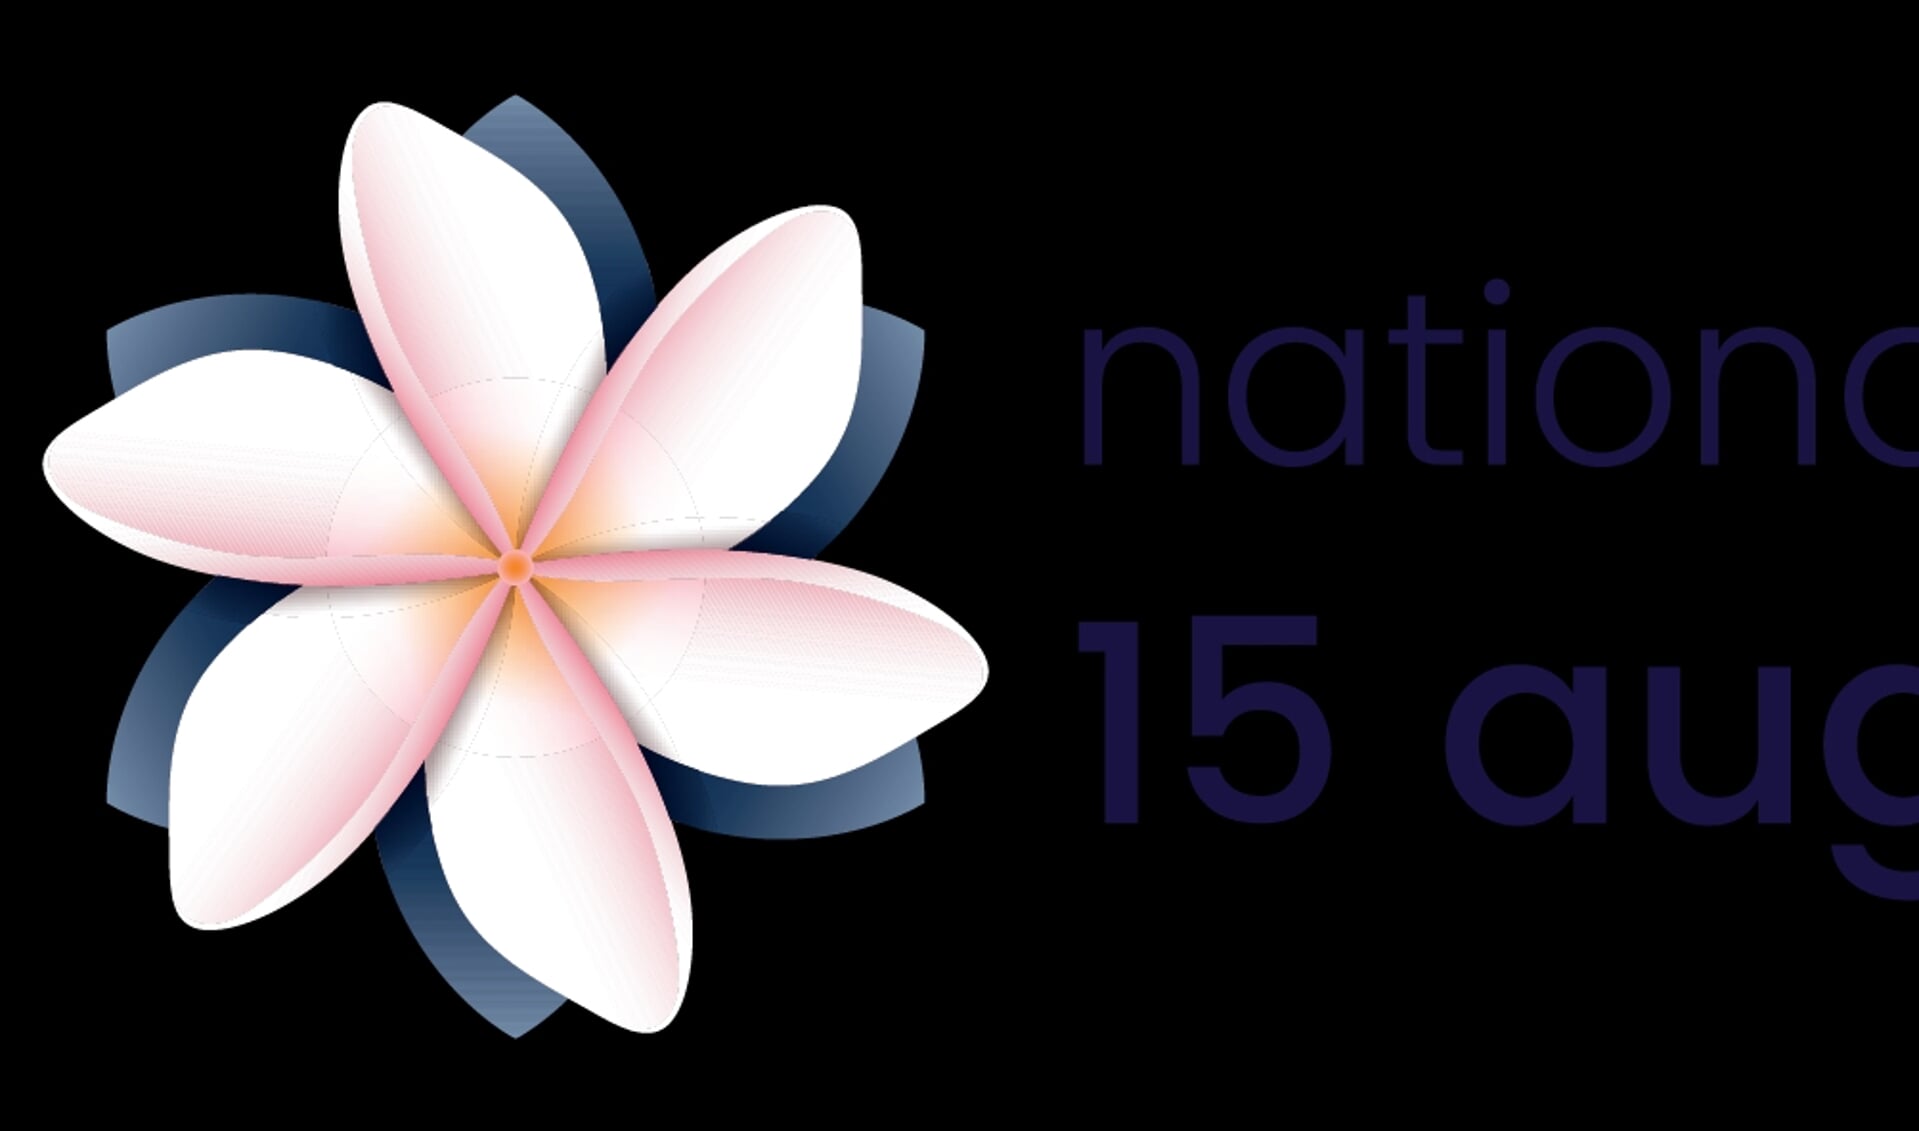 Het logo van de Nationale Herdenking 15 augustus 1945 met de Melati-bloem